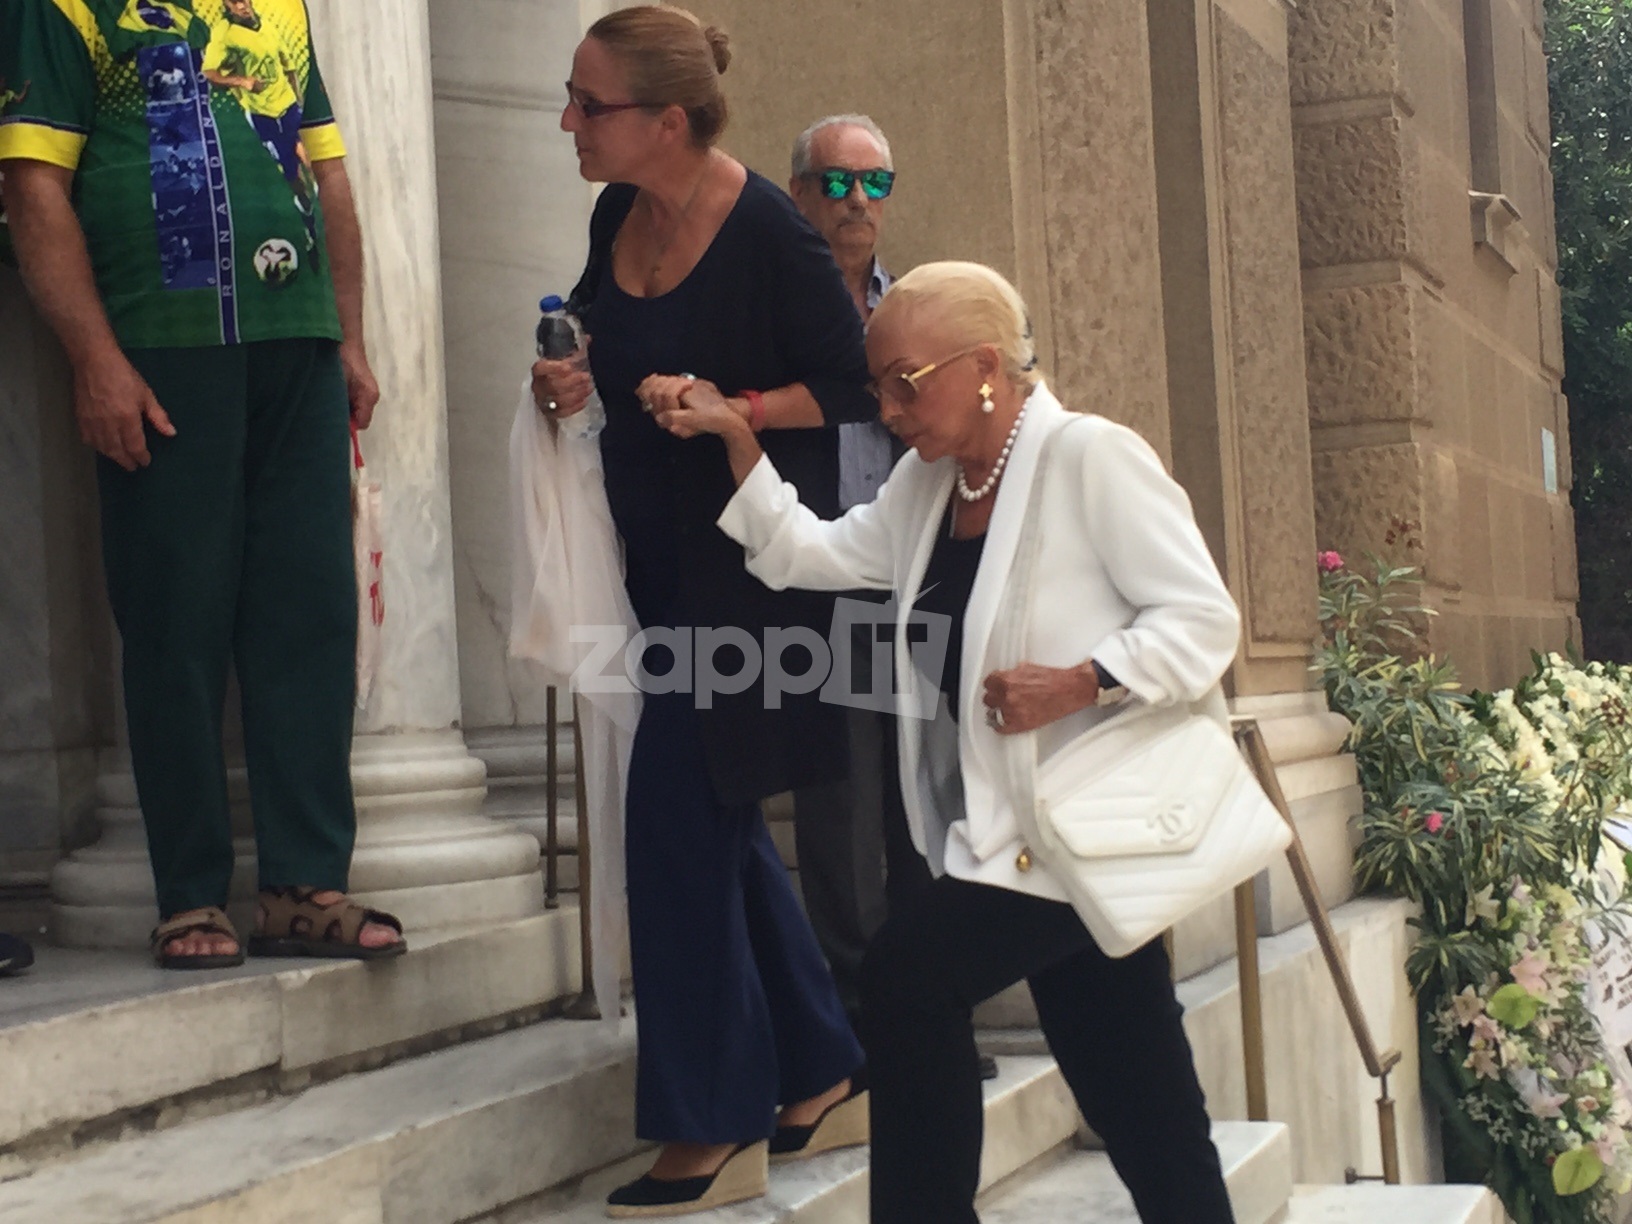 Κηδεία Ζωής Λάσκαρη: Λύγισε η Νόνικα Γαληνέα μπροστά στο φέρετρο! (εικόνες)